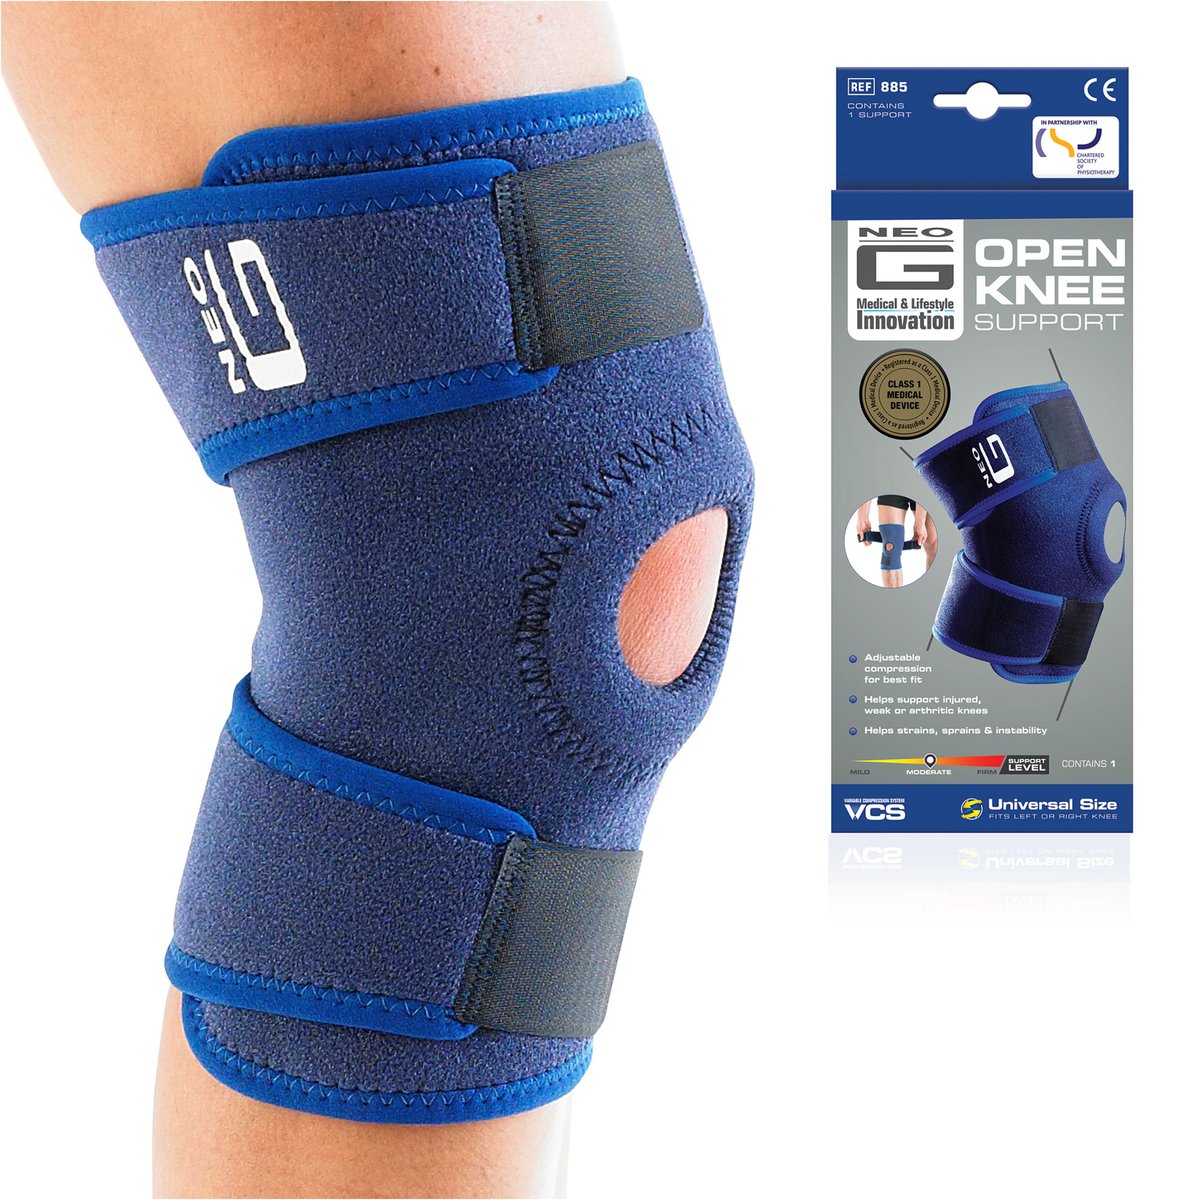 Neo G Kniebrace - Patellabrace - Voor Artritis - Verlichting van Gewrichtspijn - Kniebrace voor Volwassenen - Medisch Hulpmiddel Klasse 1 - One Size - Blauw - NEO G